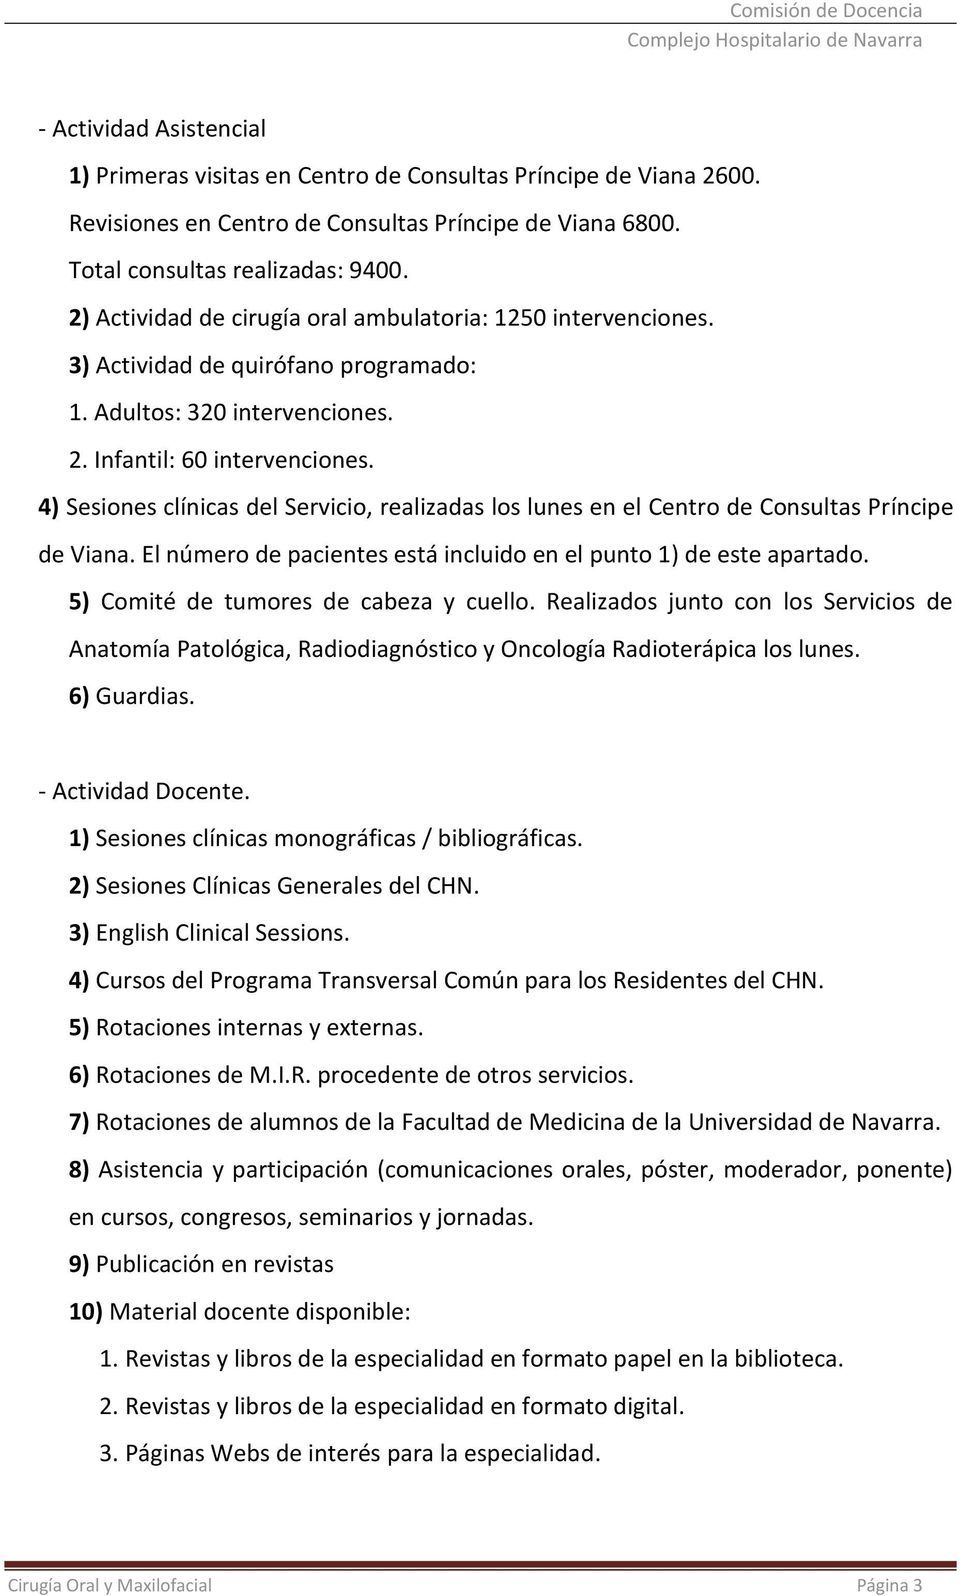 4) Sesiones clínicas del Servicio, realizadas los lunes en el Centro de Consultas Príncipe de Viana. El número de pacientes está incluido en el punto 1) de este apartado.